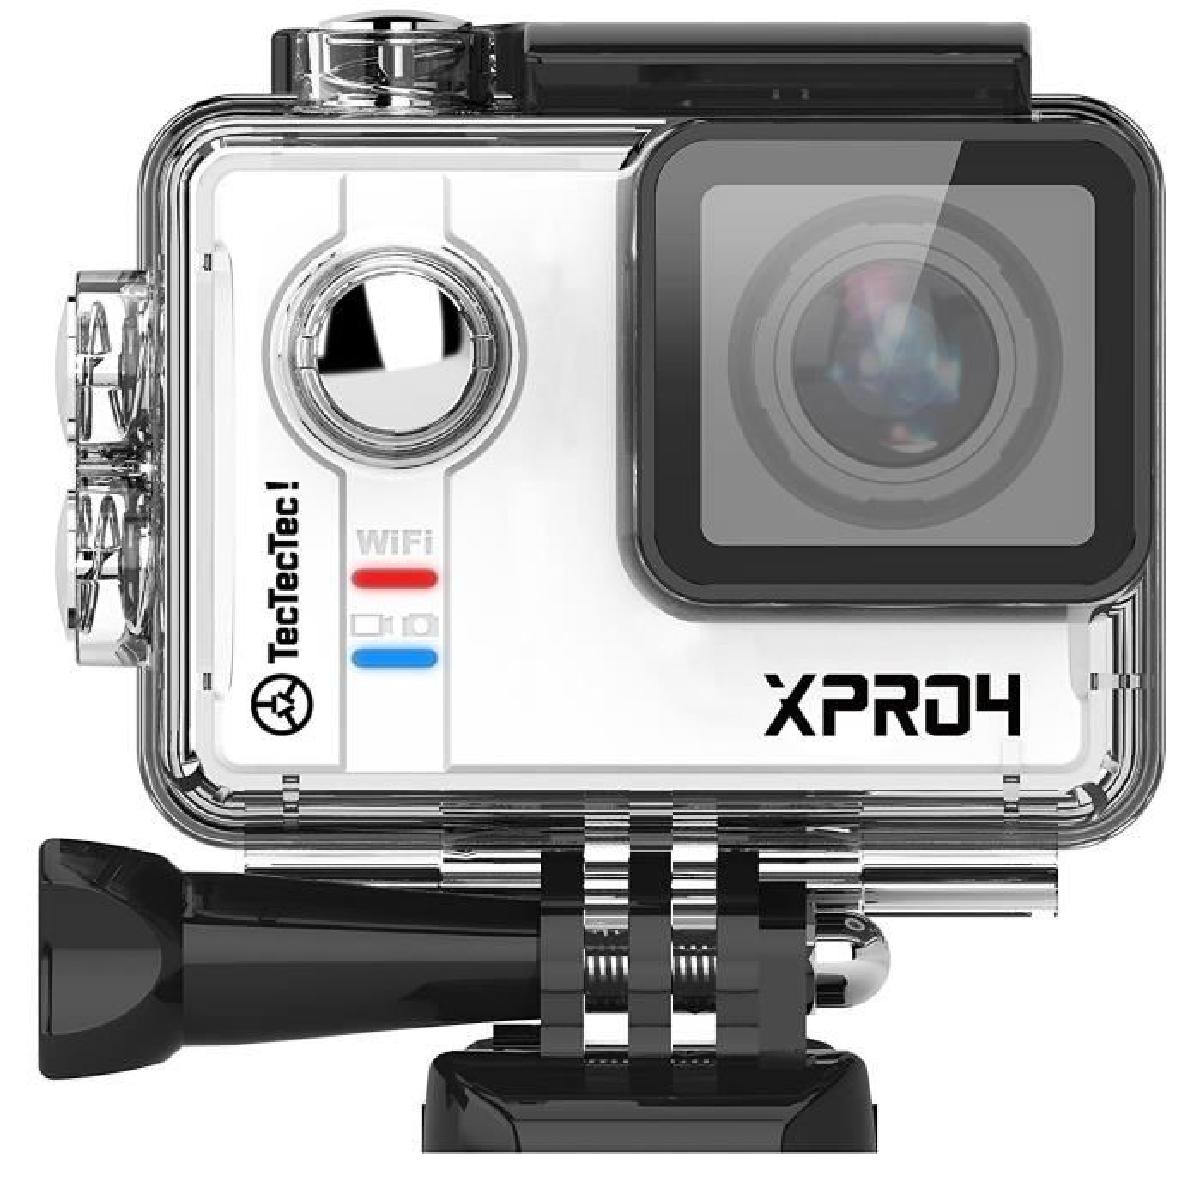 tectectec xpro4 camera sport 4k ultra hd camera